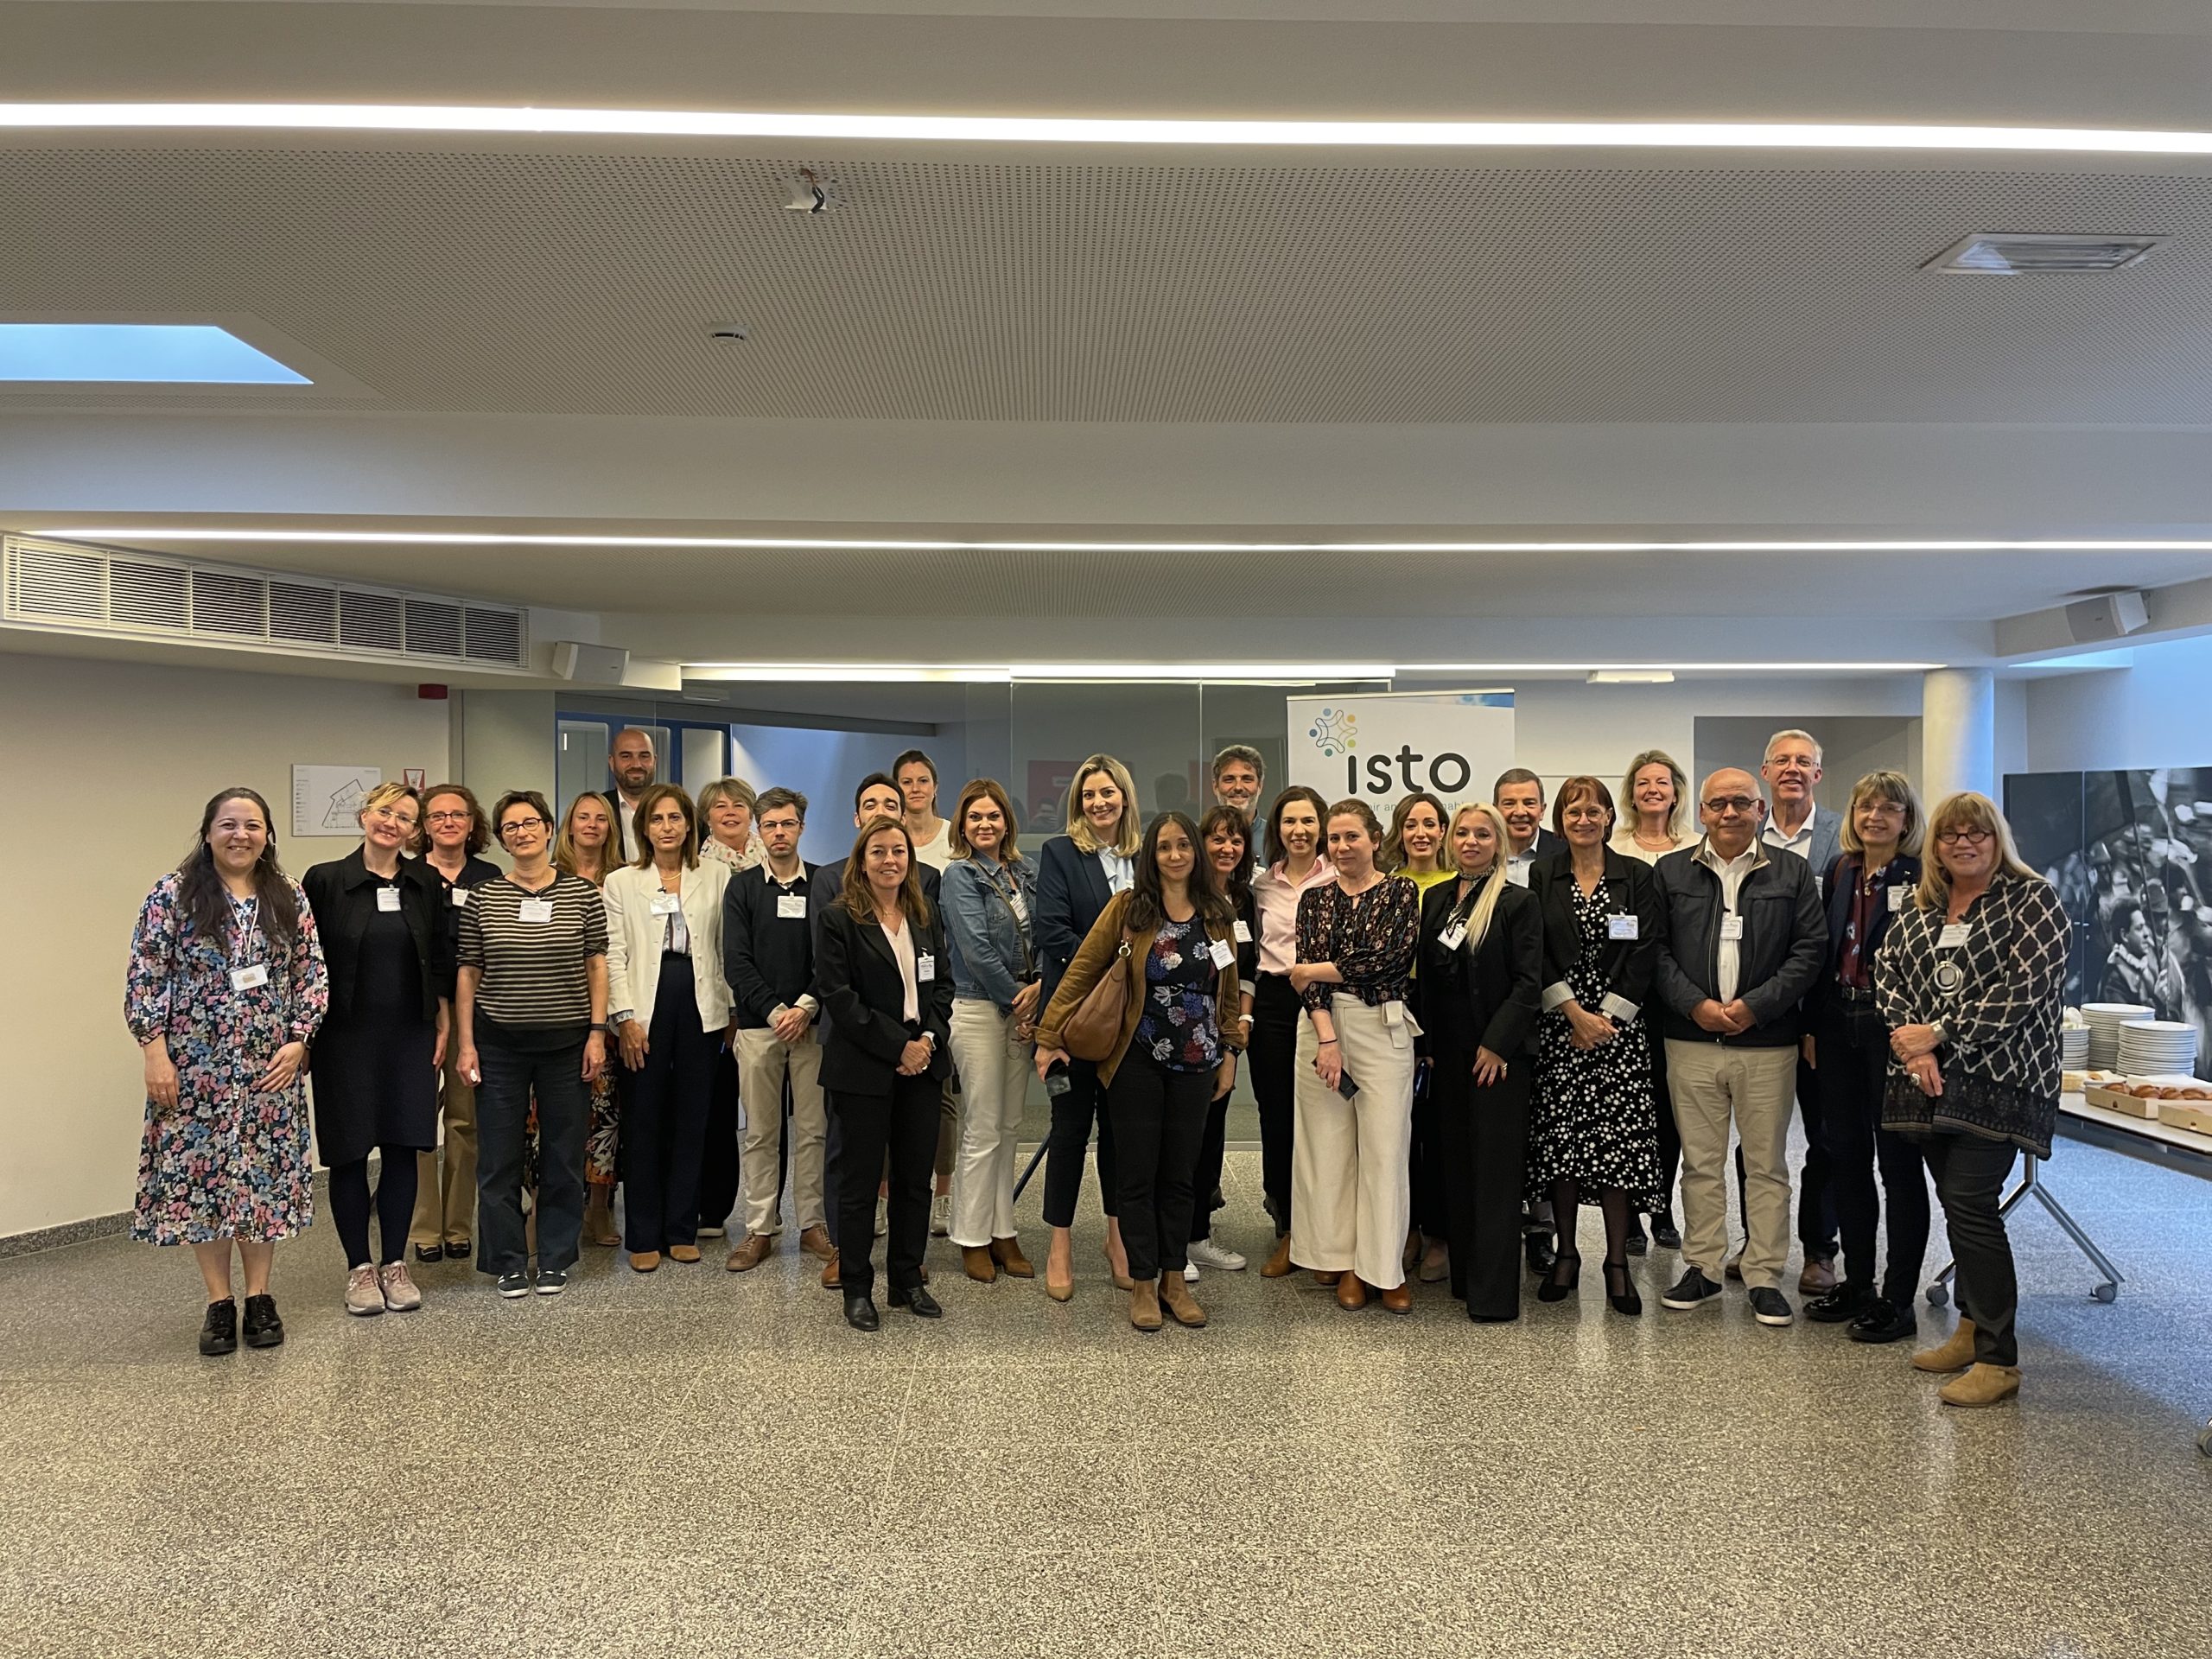 Reunión de ISTO Europa sobre cómo medir la sostenibilidad social del turismo dio lugar a esfuerzos mancomunados para identificar indicadores comunes